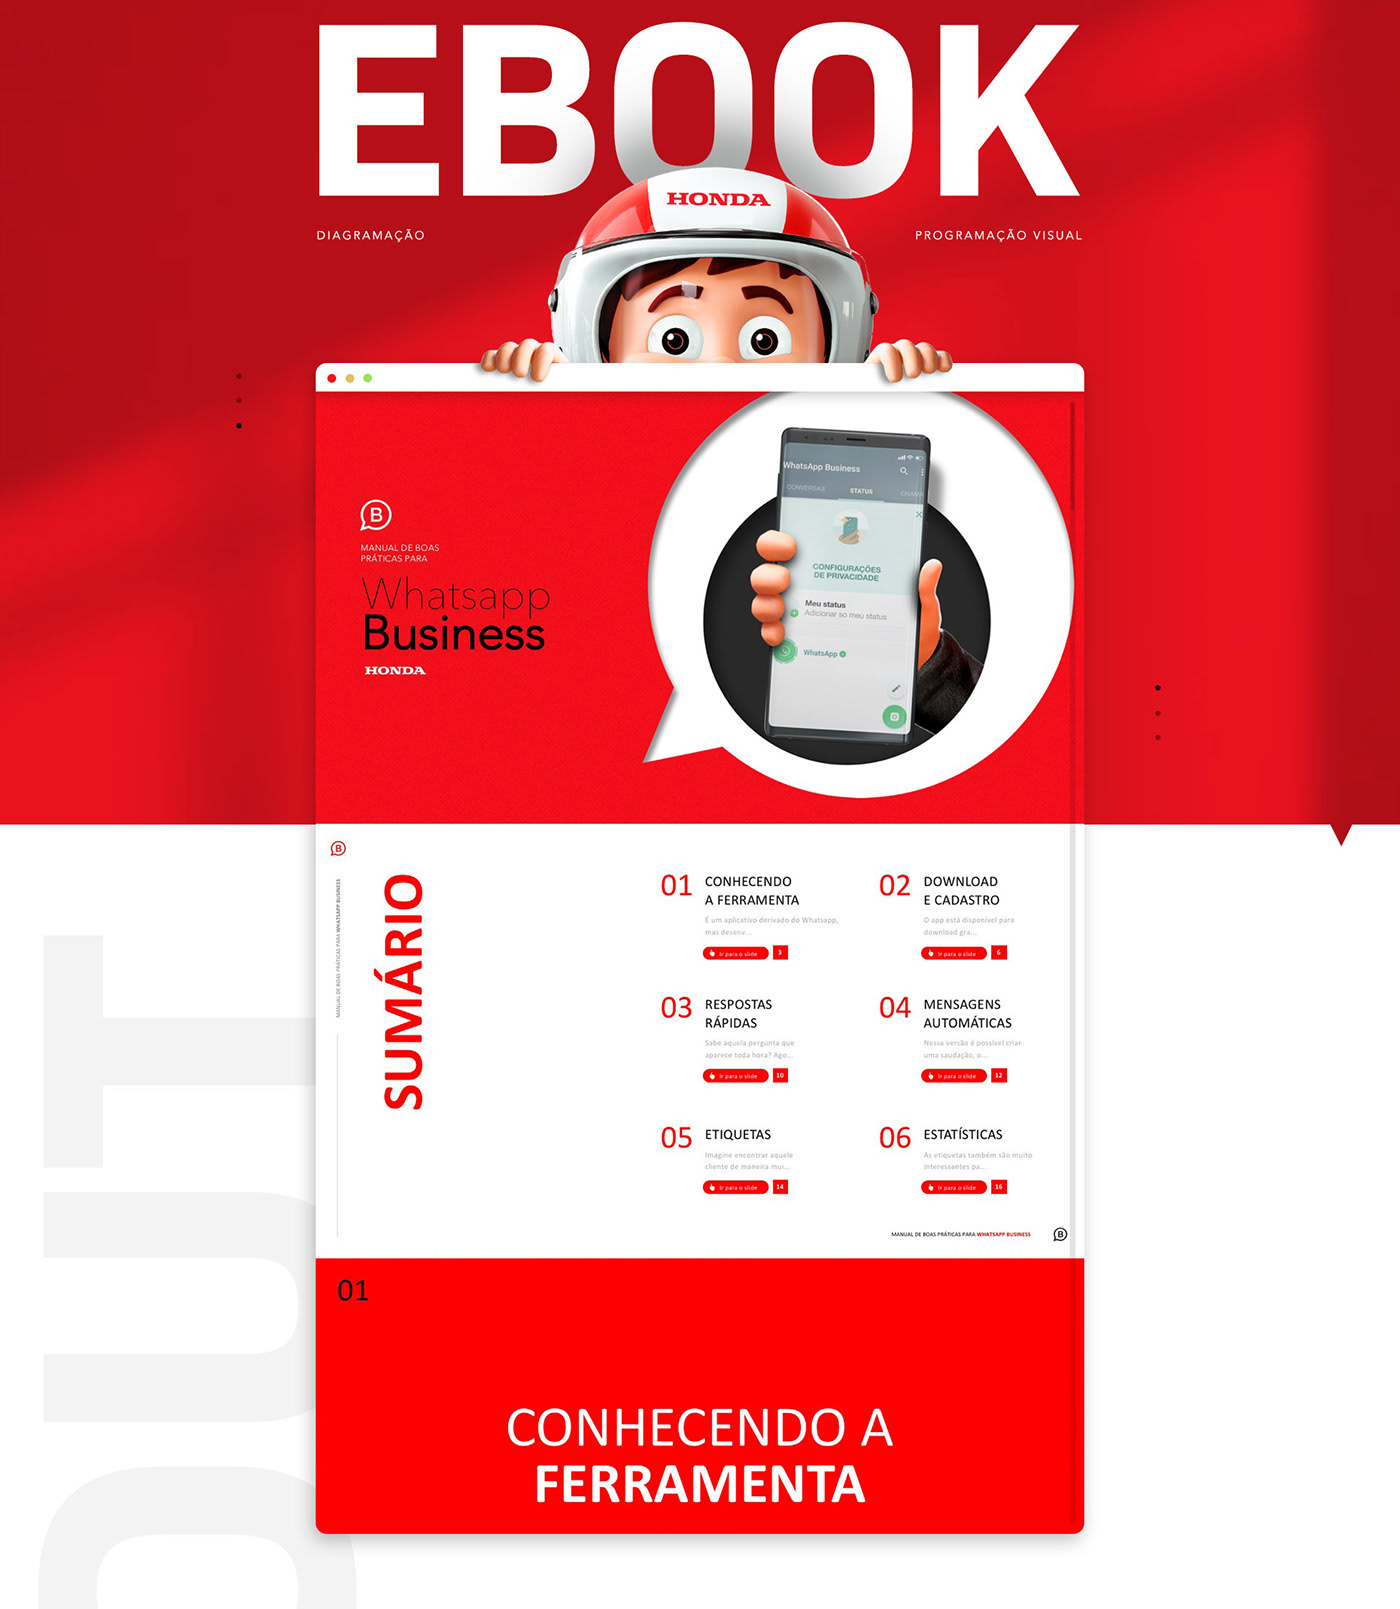 #DUOVOZZ #ebook #publicidade design grafico Ilustração interações